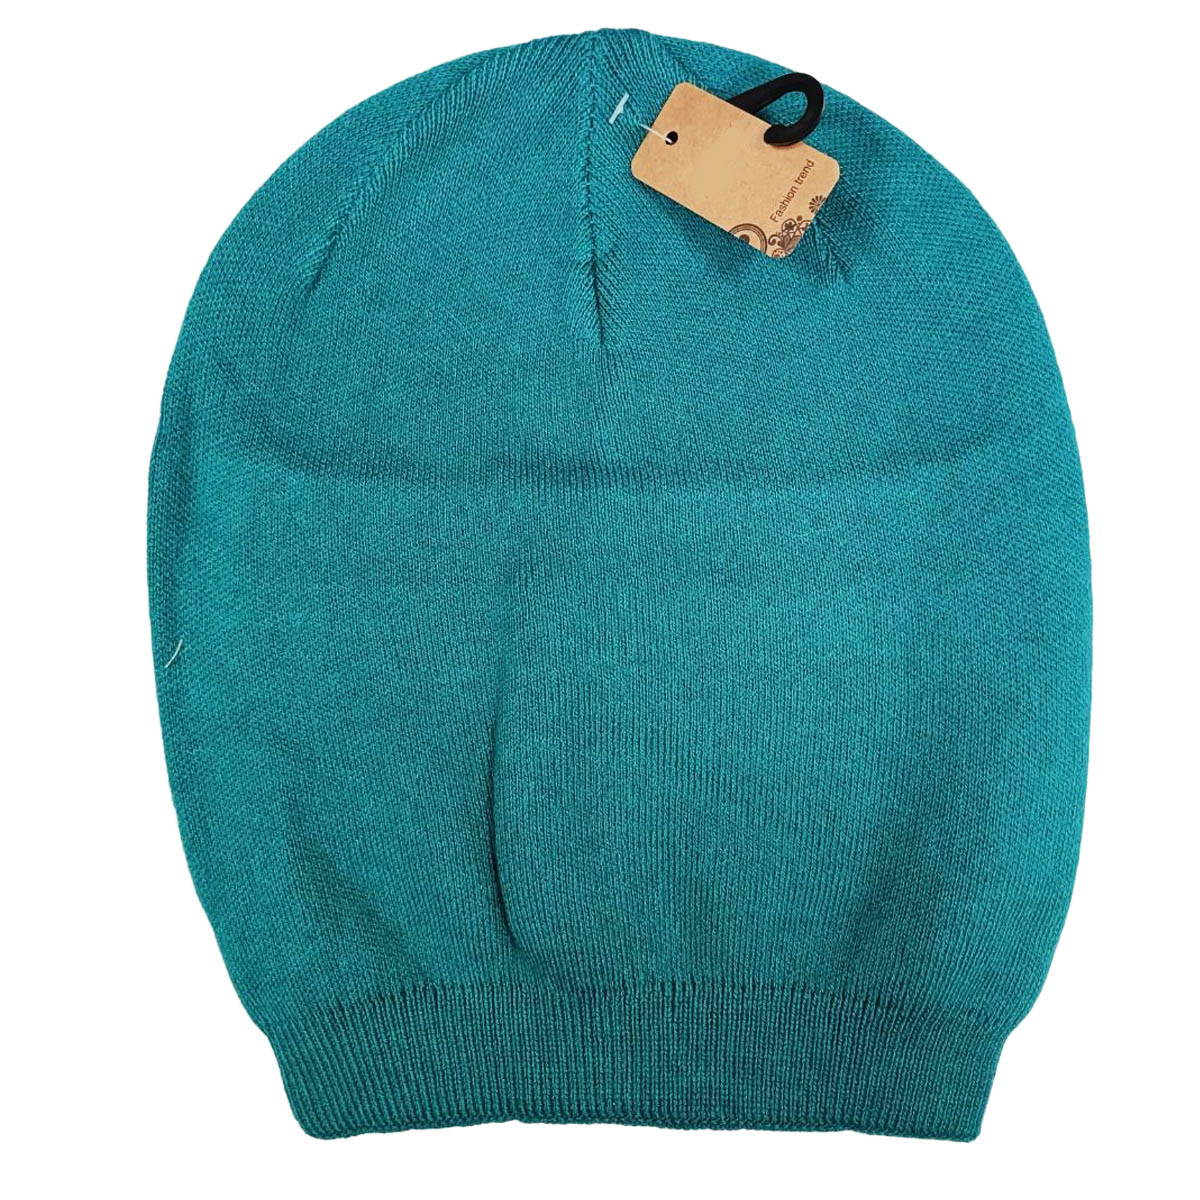 Bonnet laine cachemire \'Highlands\' turquoise - taille unique - [R8904]